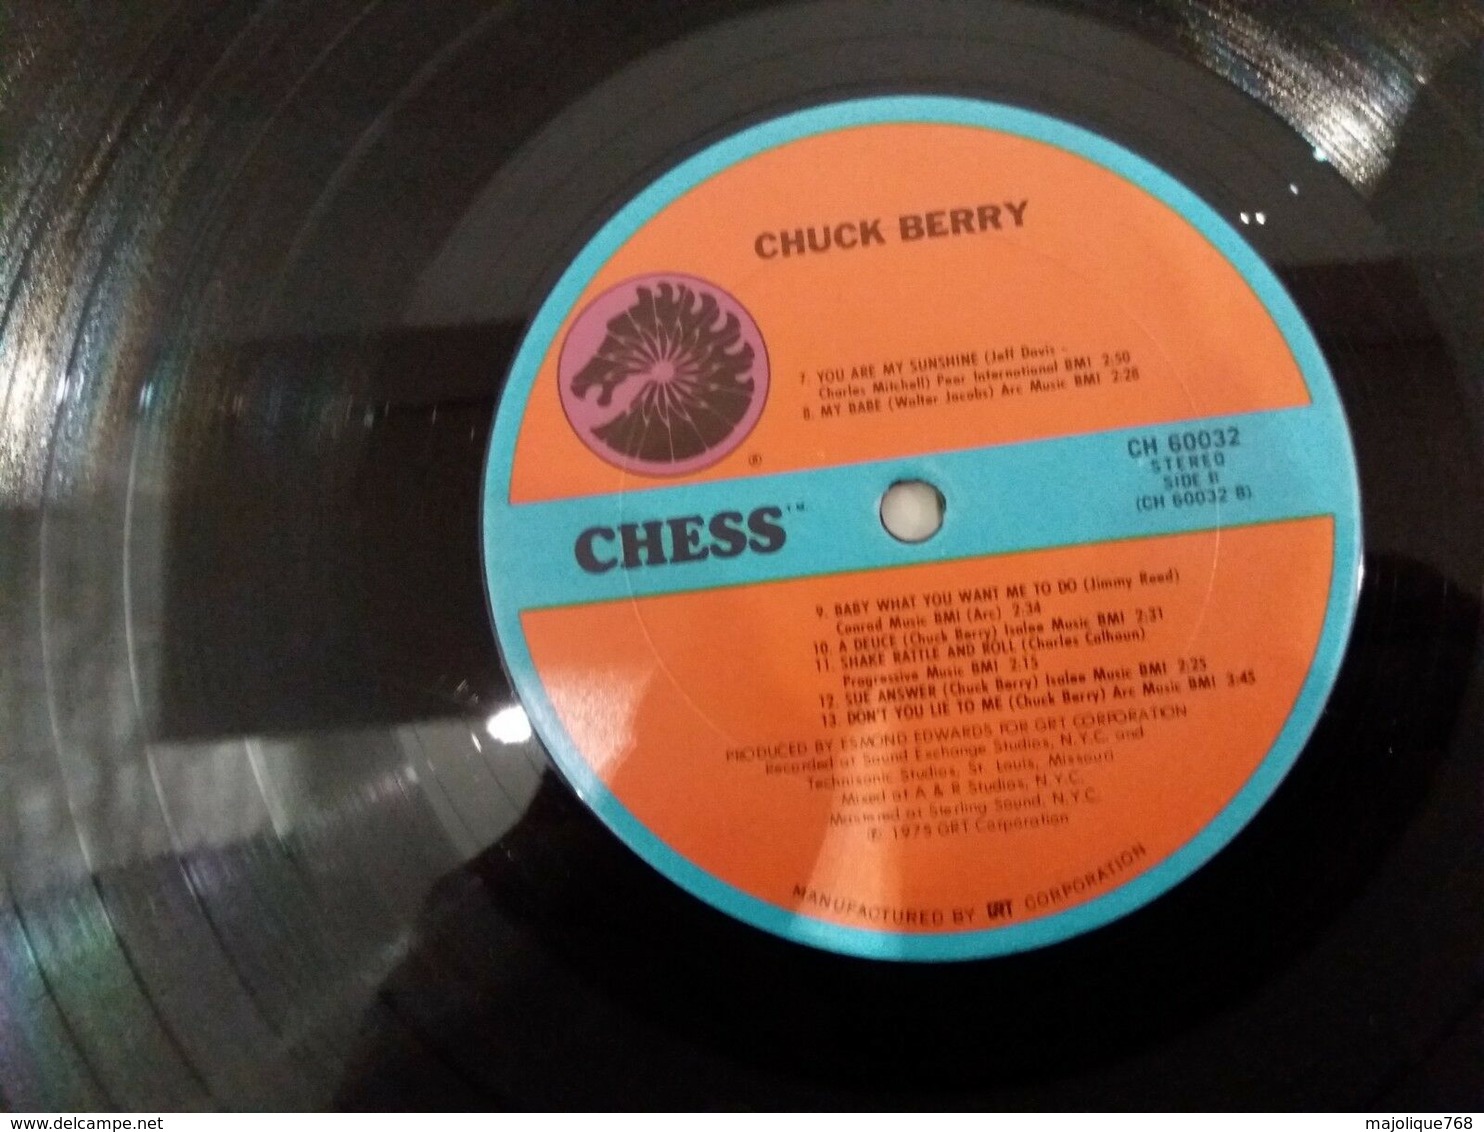 Chuck Berry - swanee river - Chess CH 60032 - 1975  vinyl LP original USA - les coins sont coupés  -